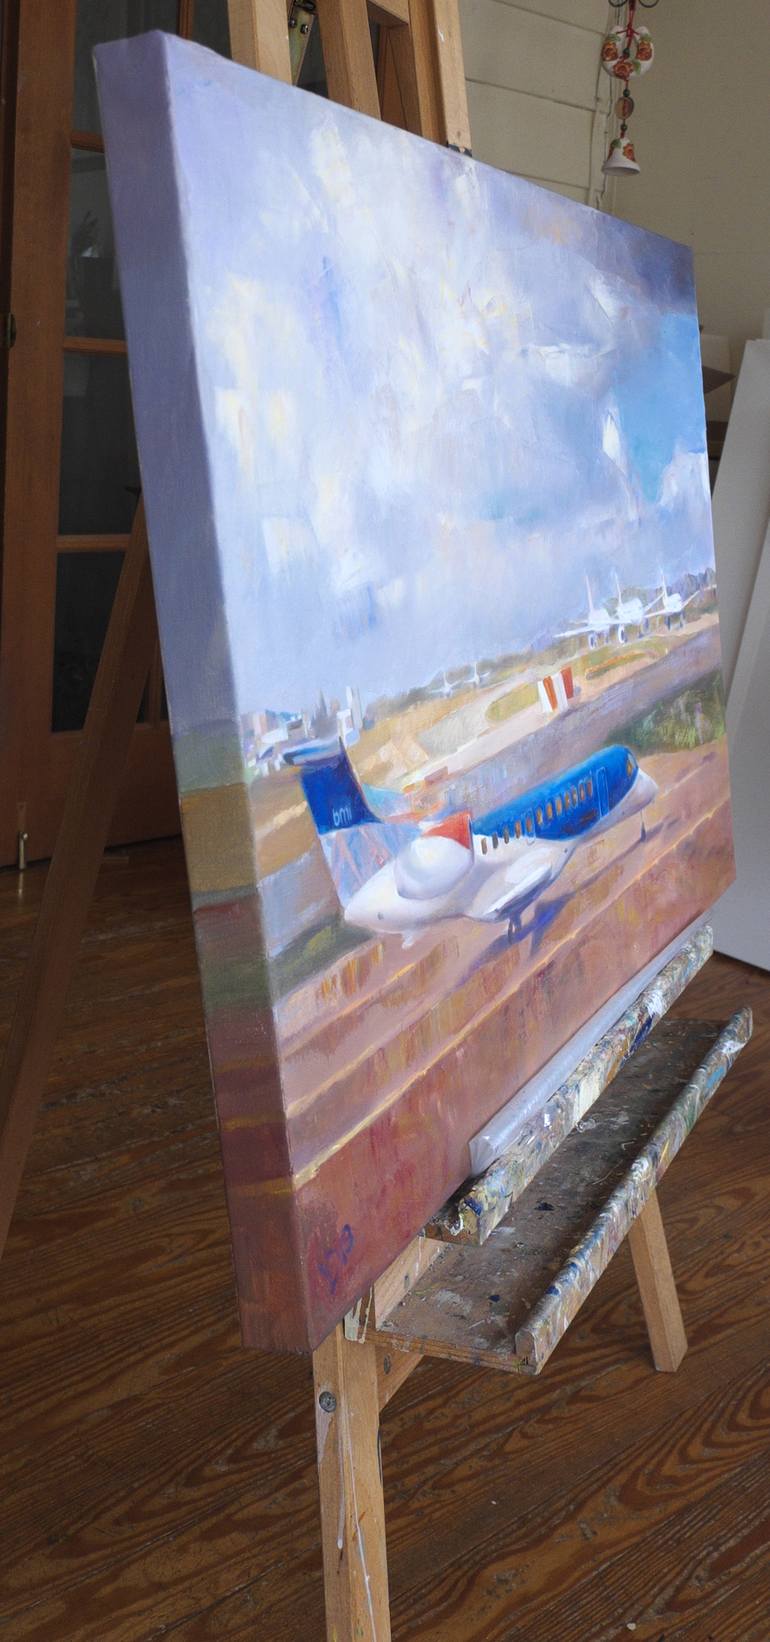 Original Documentary Airplane Painting by Dina Volkova